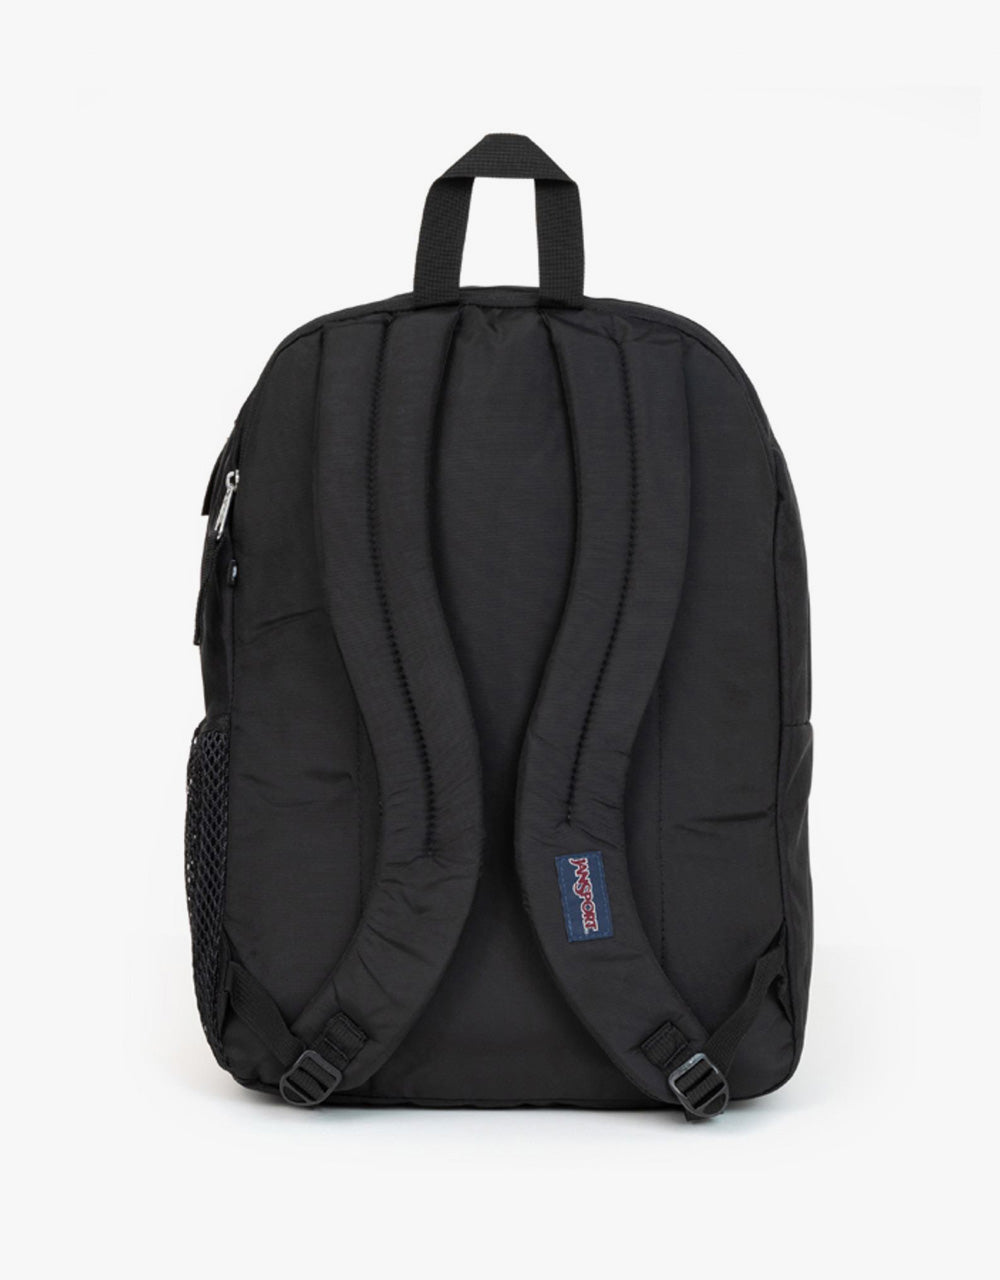 Jansport Big Student Backpack - Black